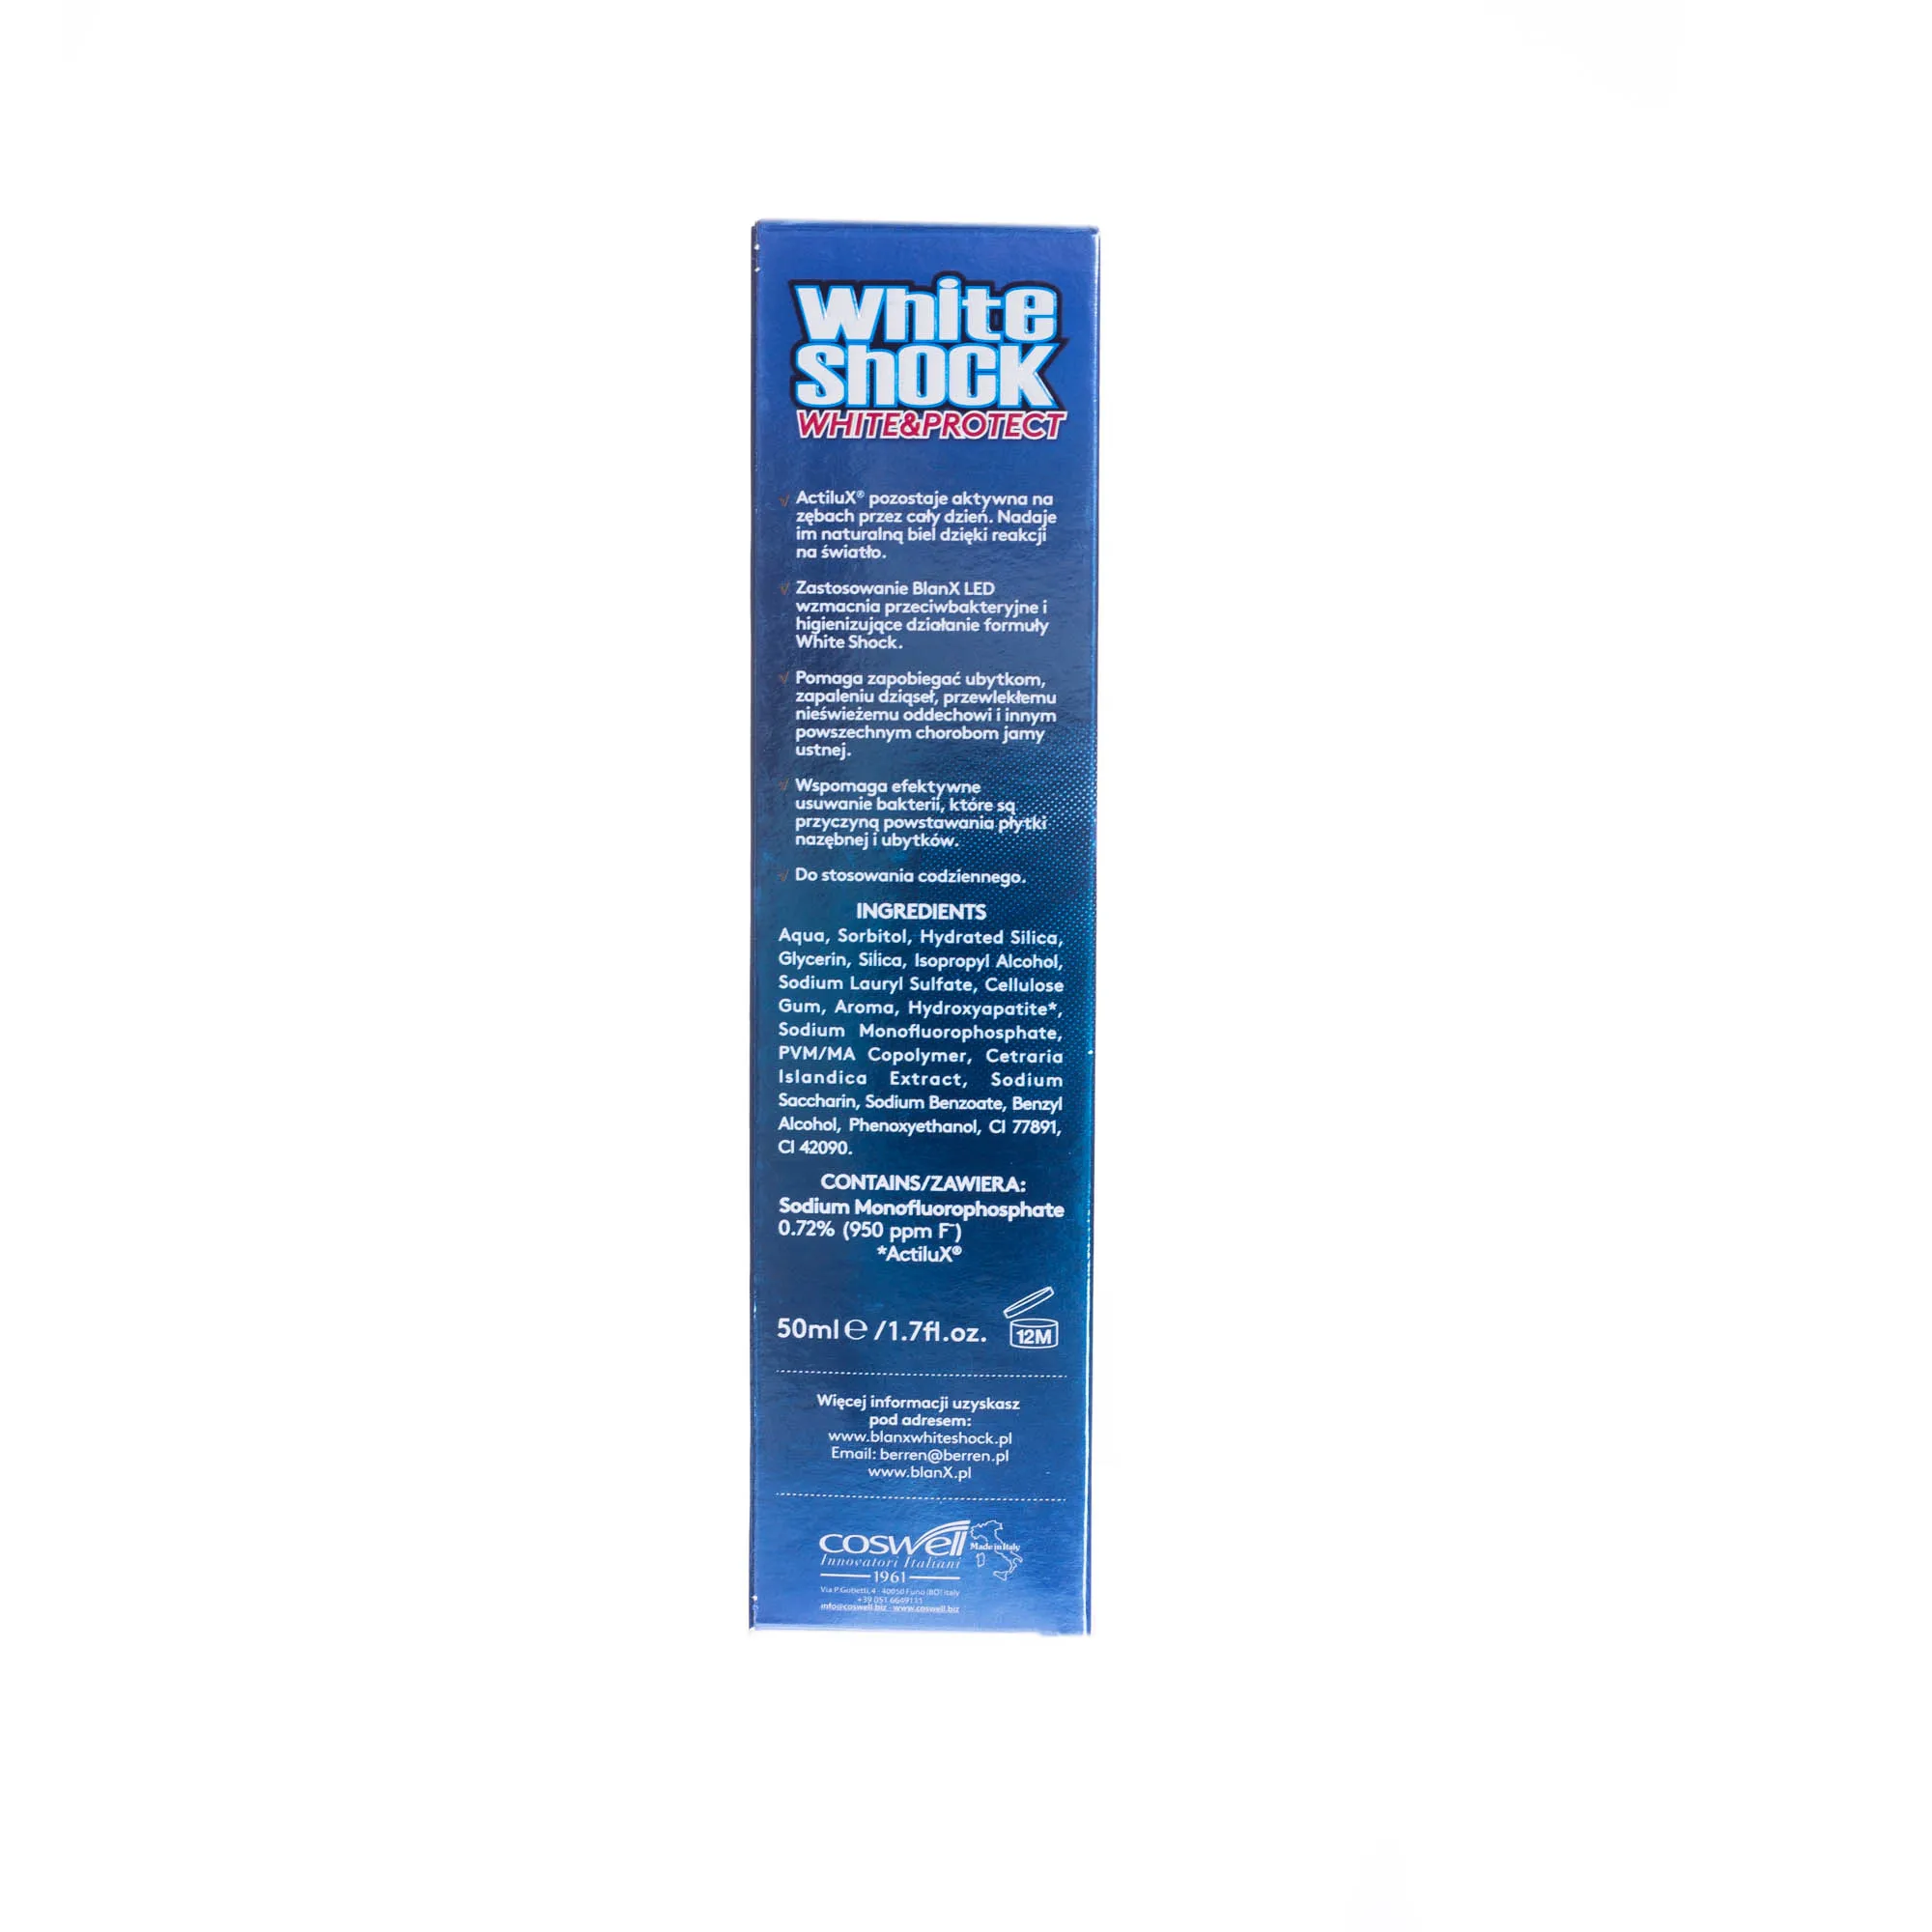 BlanX White Shock, pasta do zębów plus Blanx LED, 50 ml 